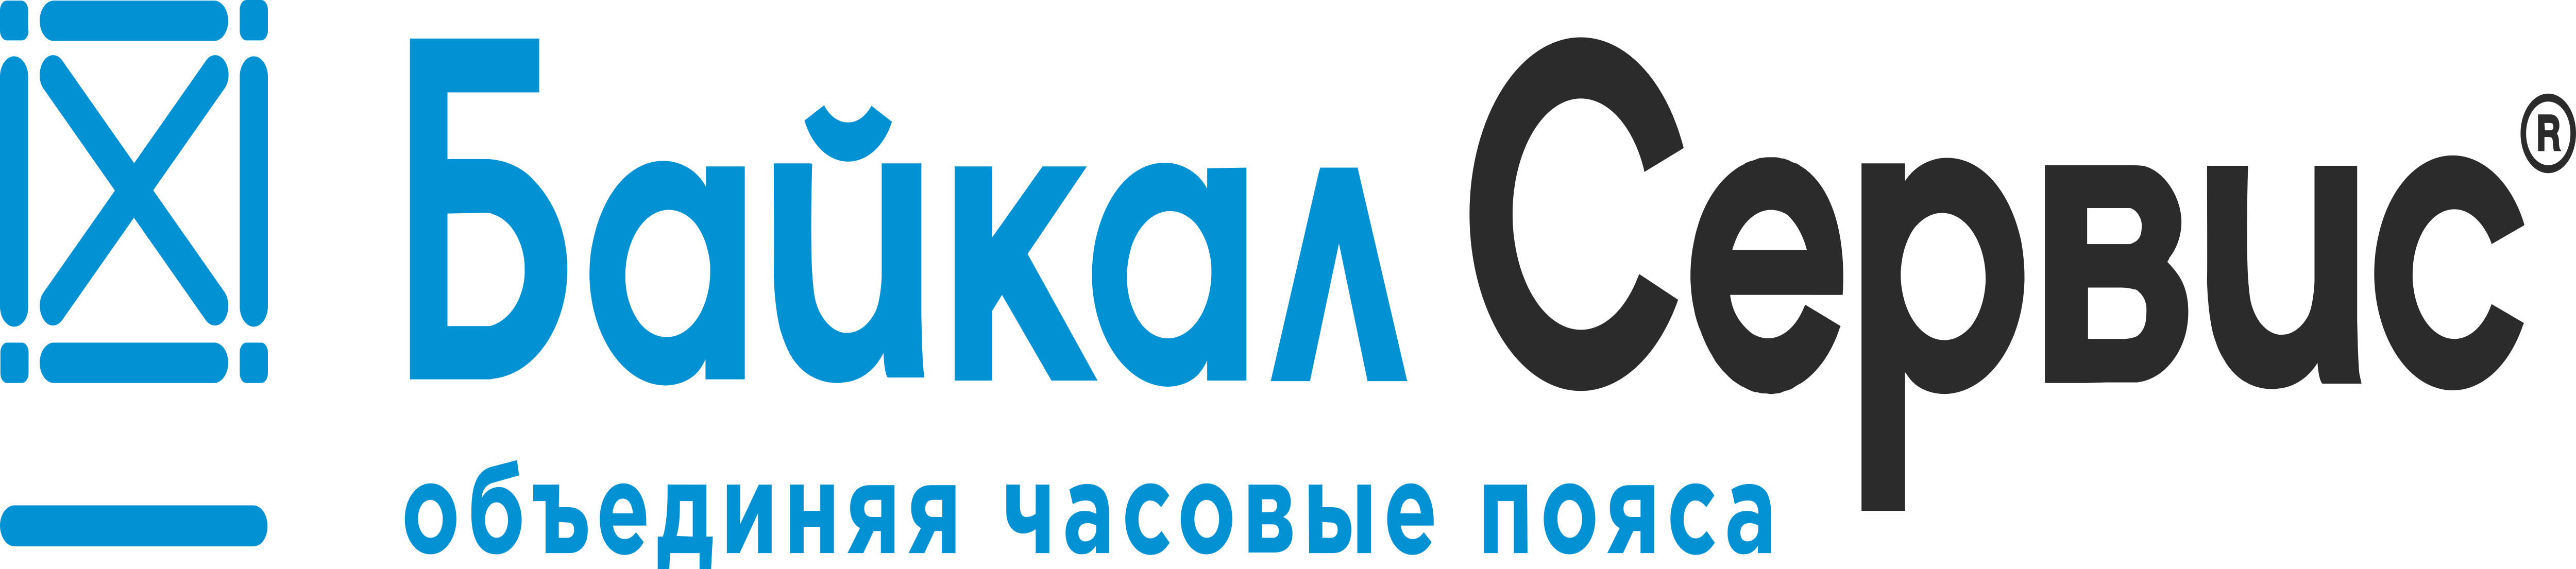 Байкал посылок сервис. Байкал сервис. ТК Байкал сервис. Байкал сервис лого. Логотип компании Байкал сервис.